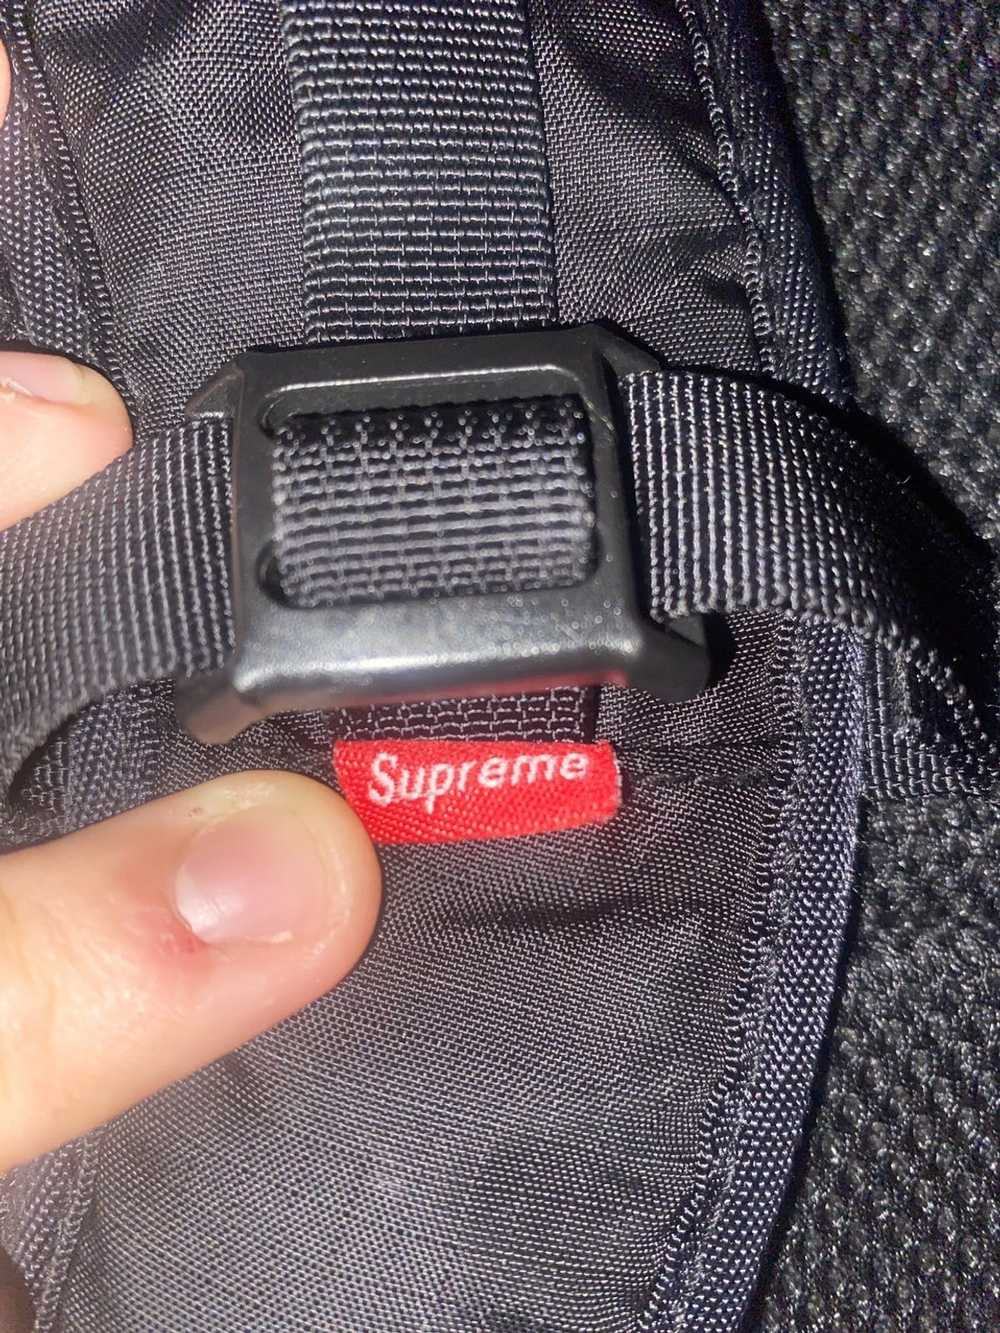 Supreme Supreme SS17 Backpack - image 9